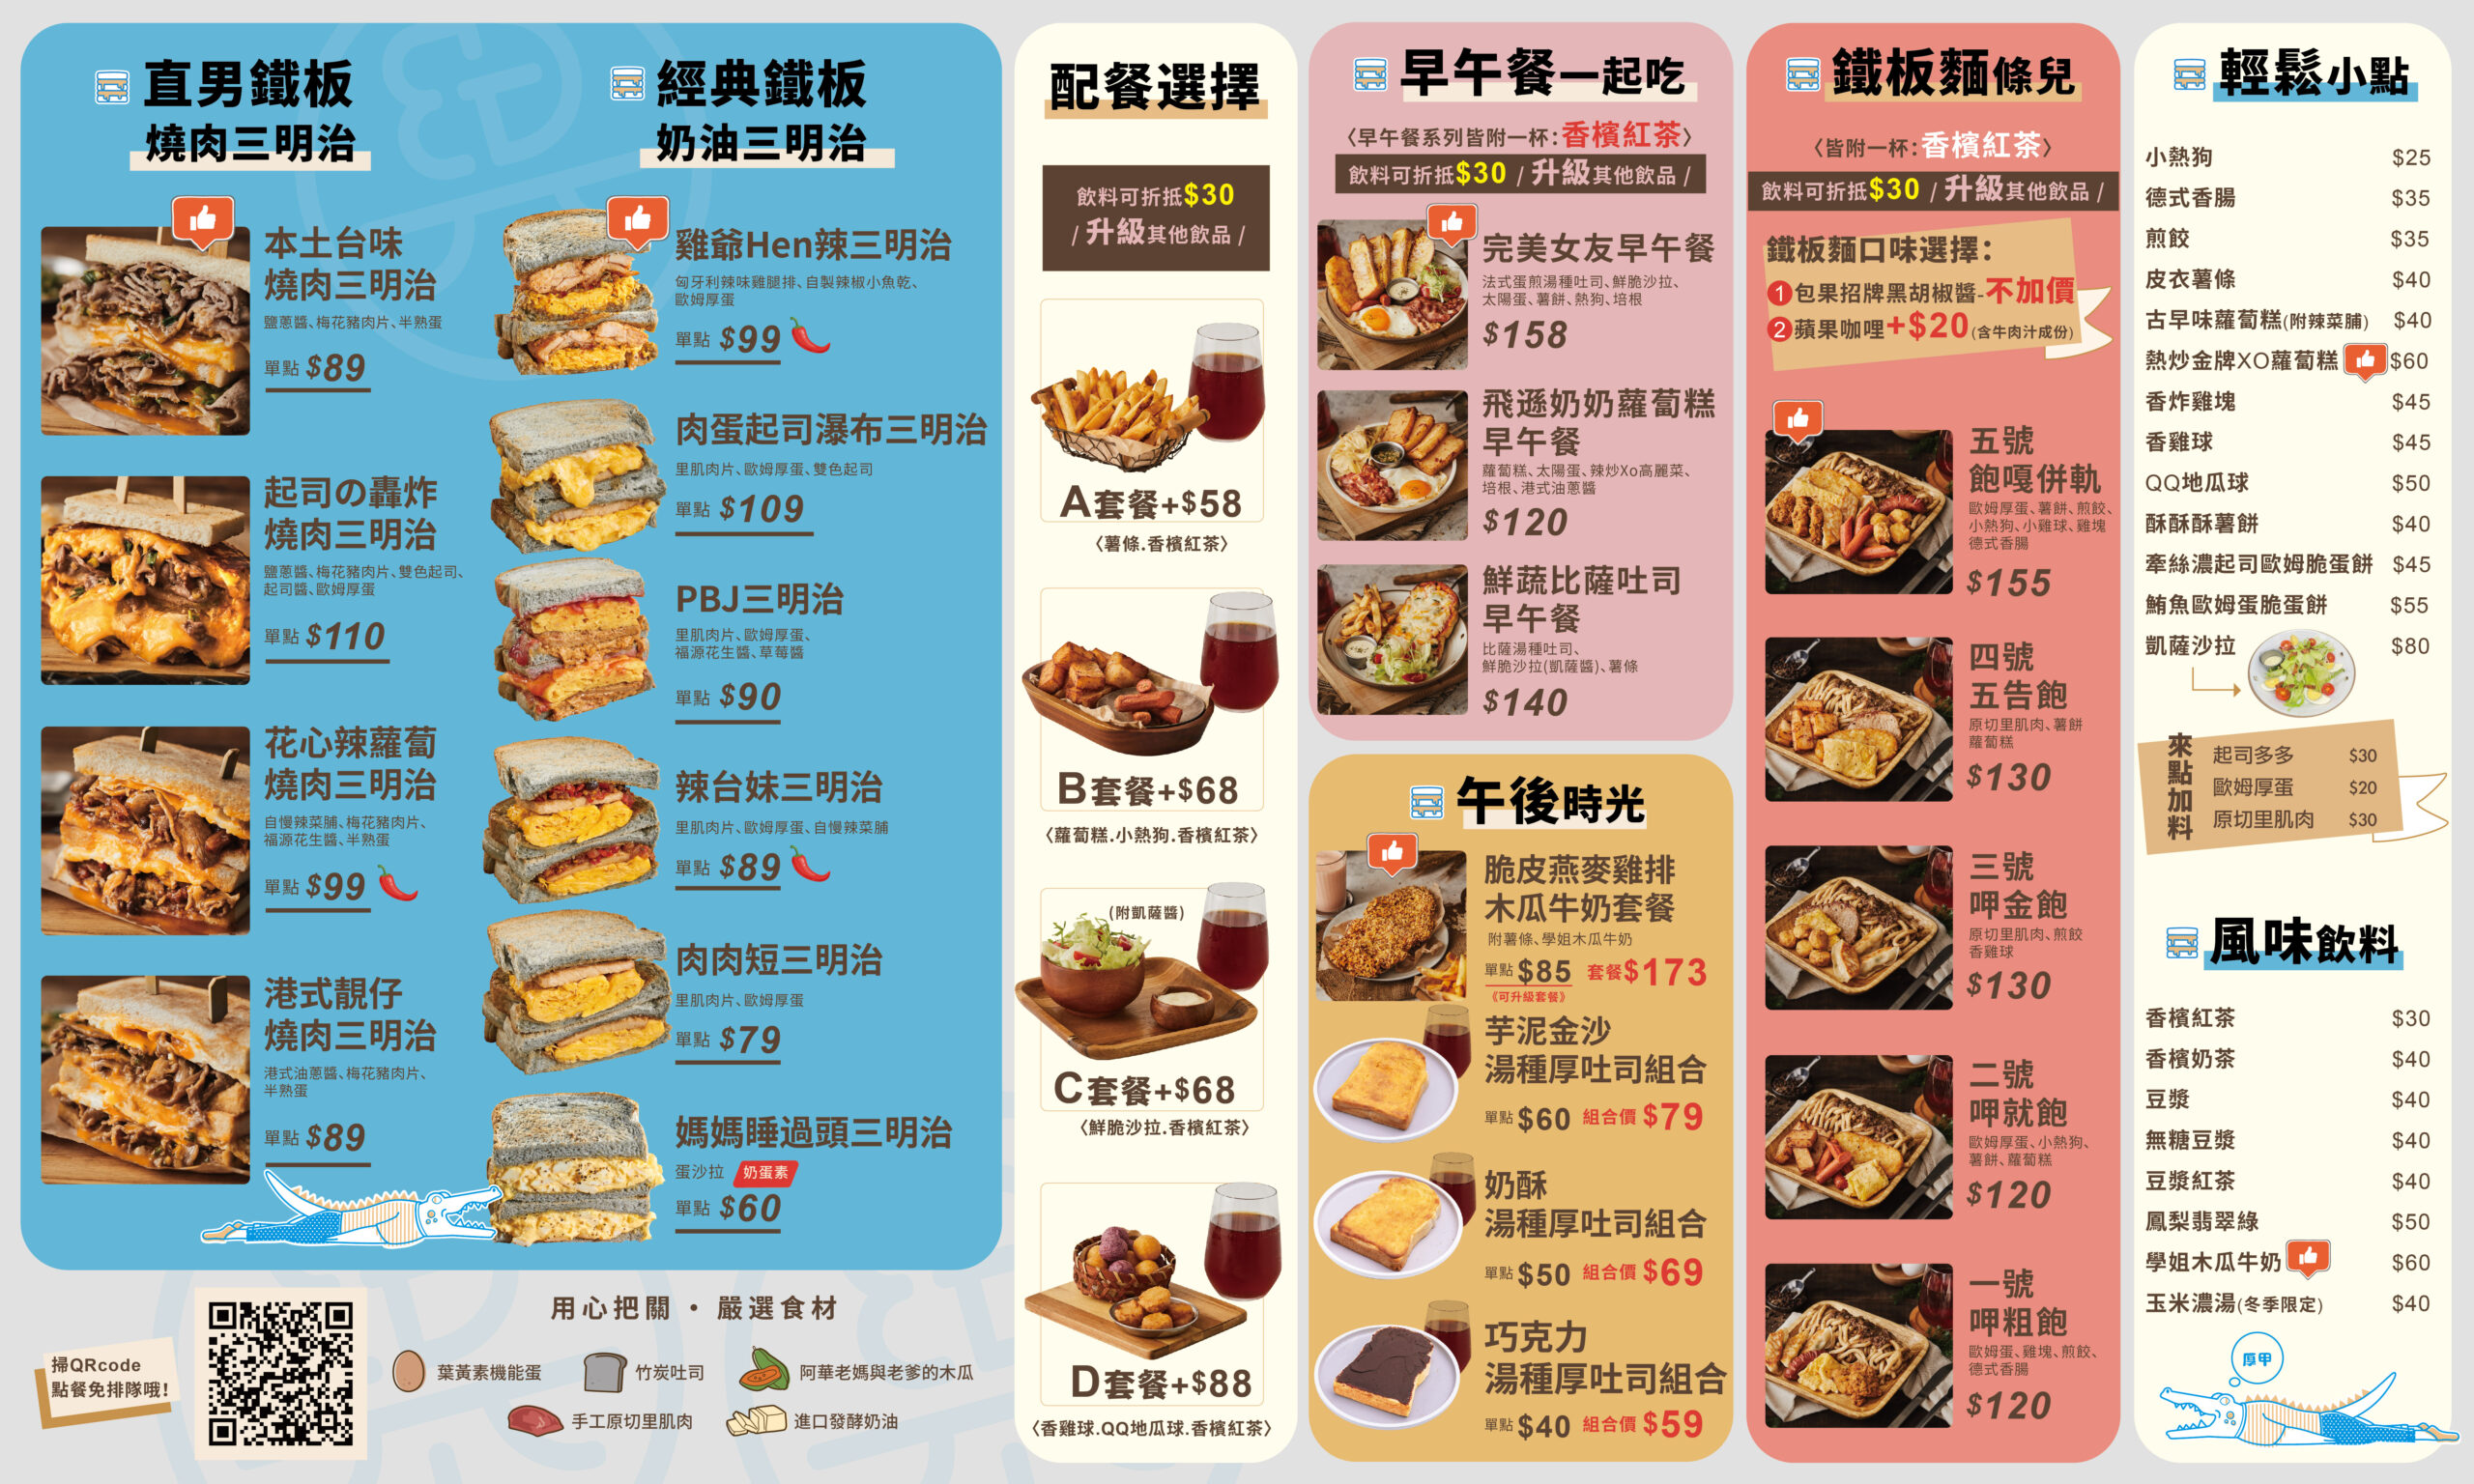 包果菜單,包果Baoguo,包果早午餐,包果雞排,包果紅茶,包果內湖店